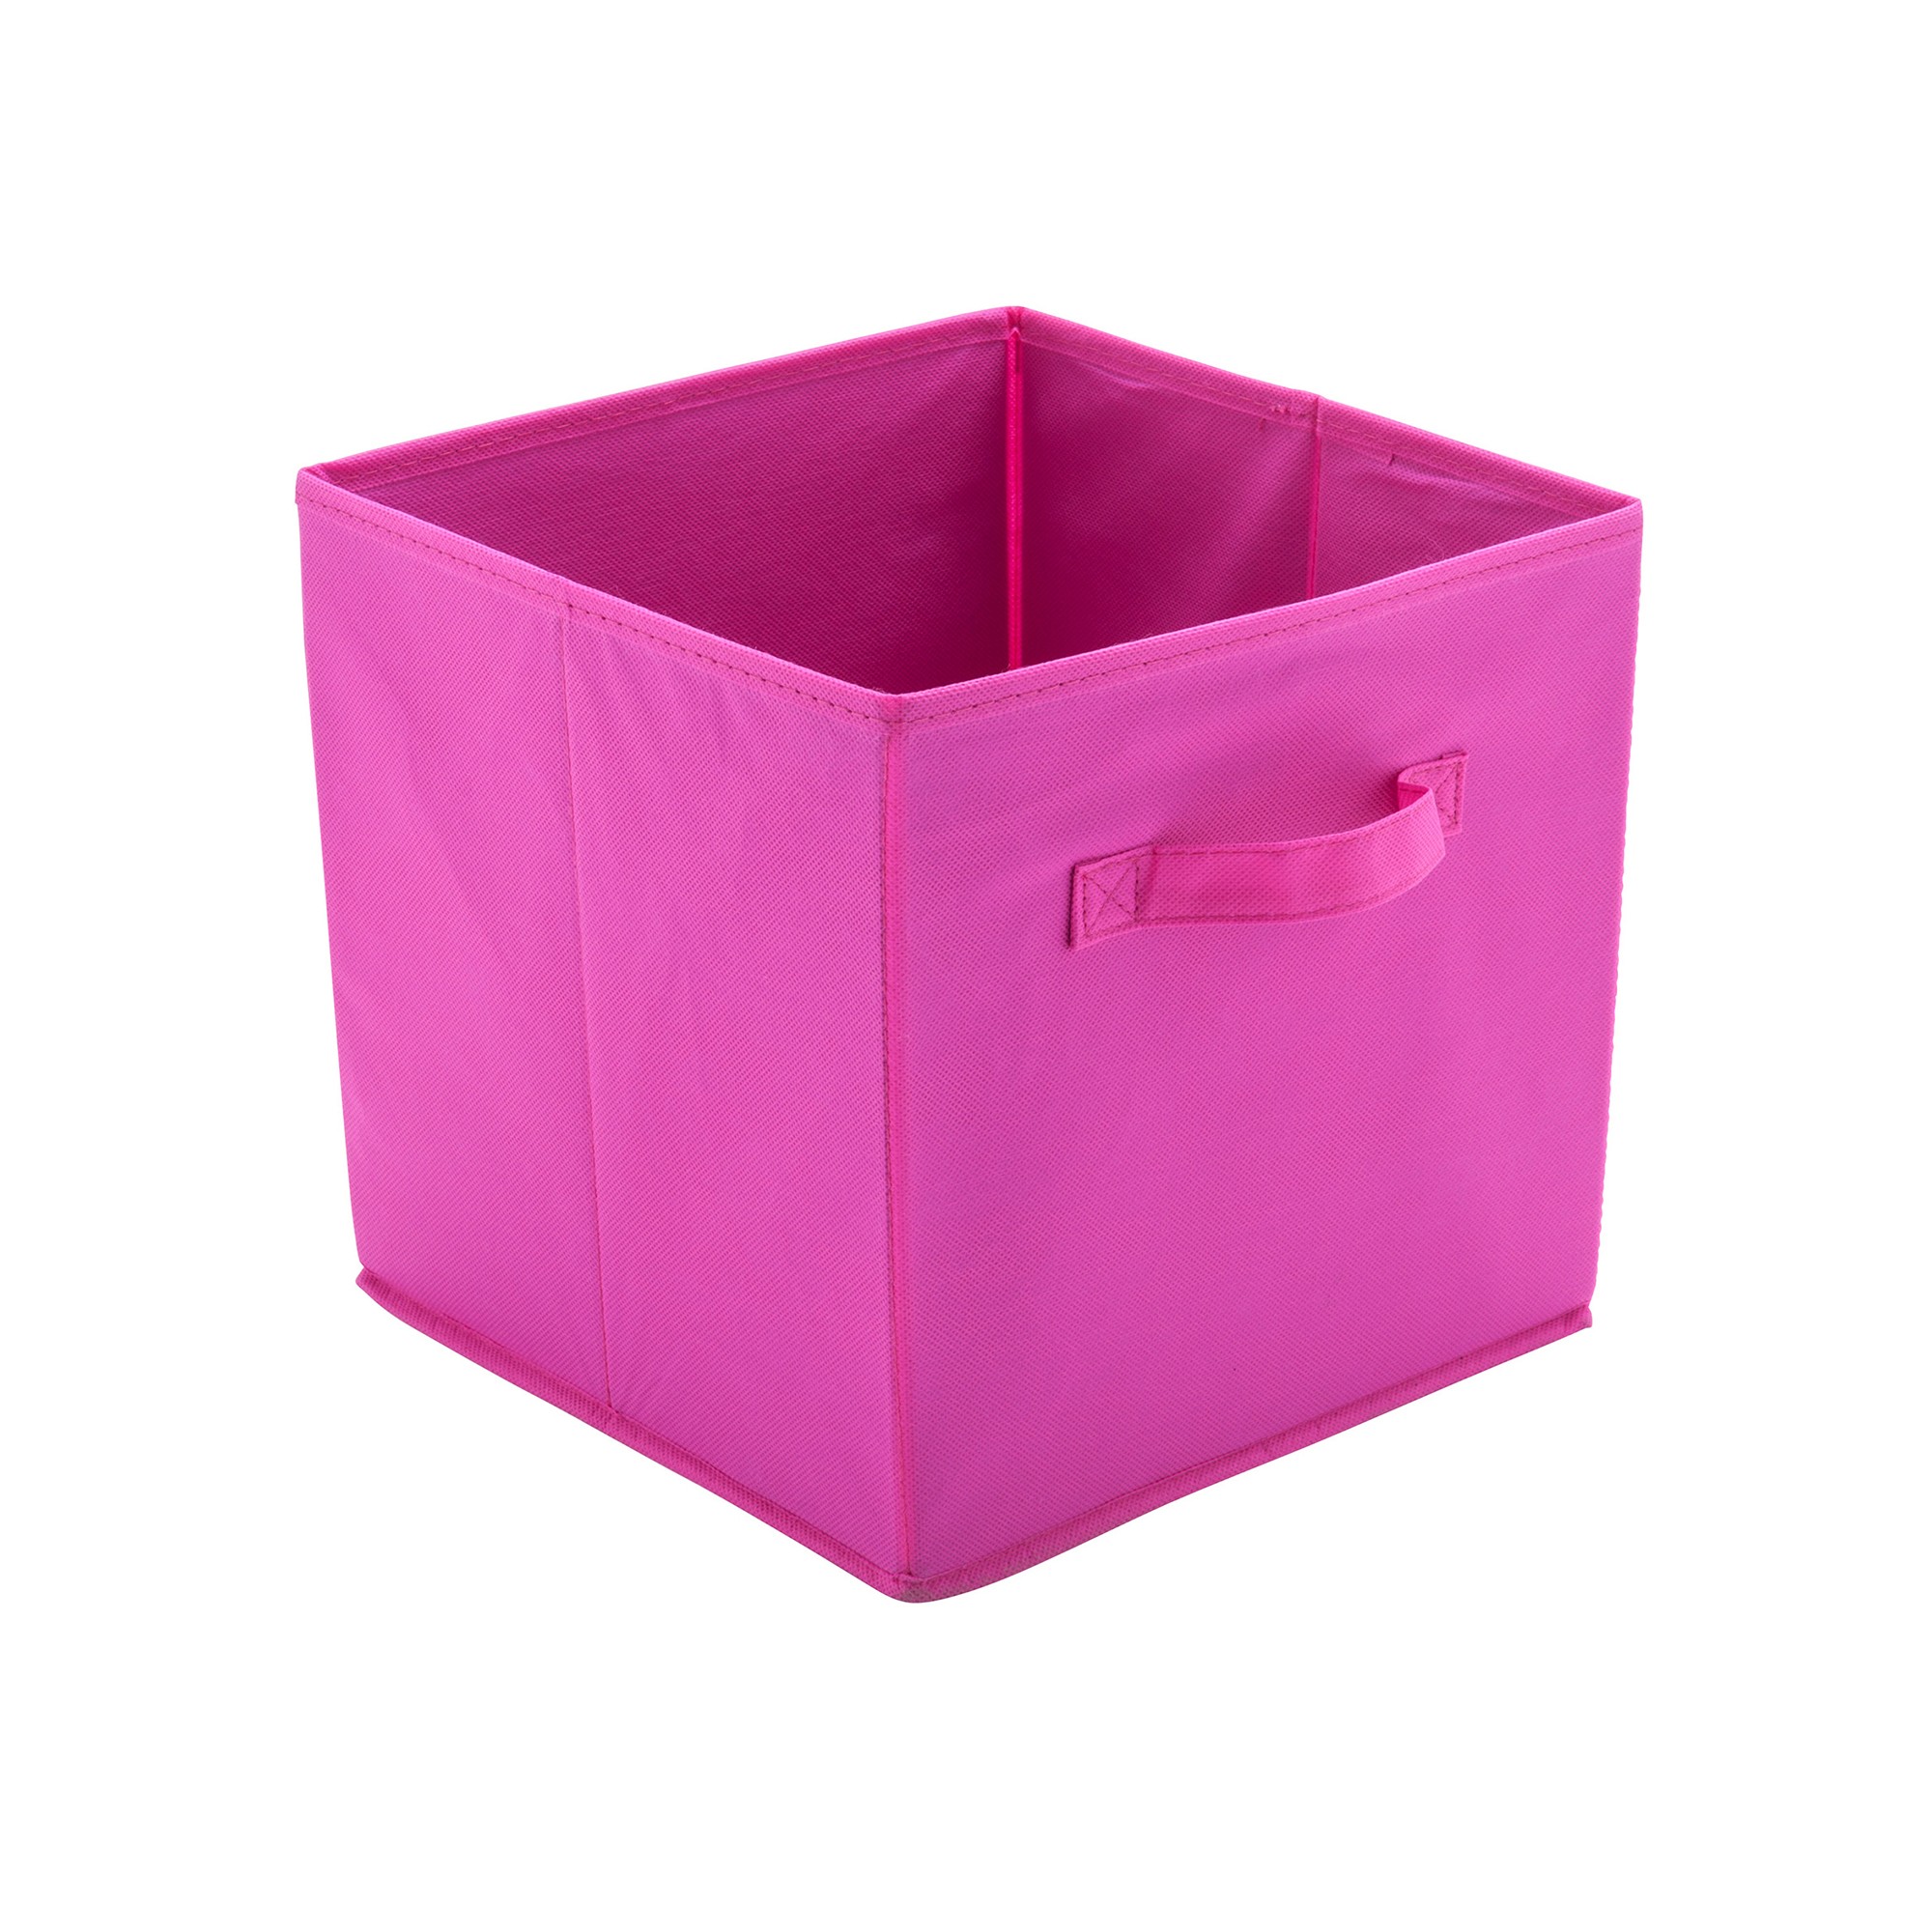 Panier cube de rangement rose - 30x30x25 - ON RANGE TOUT